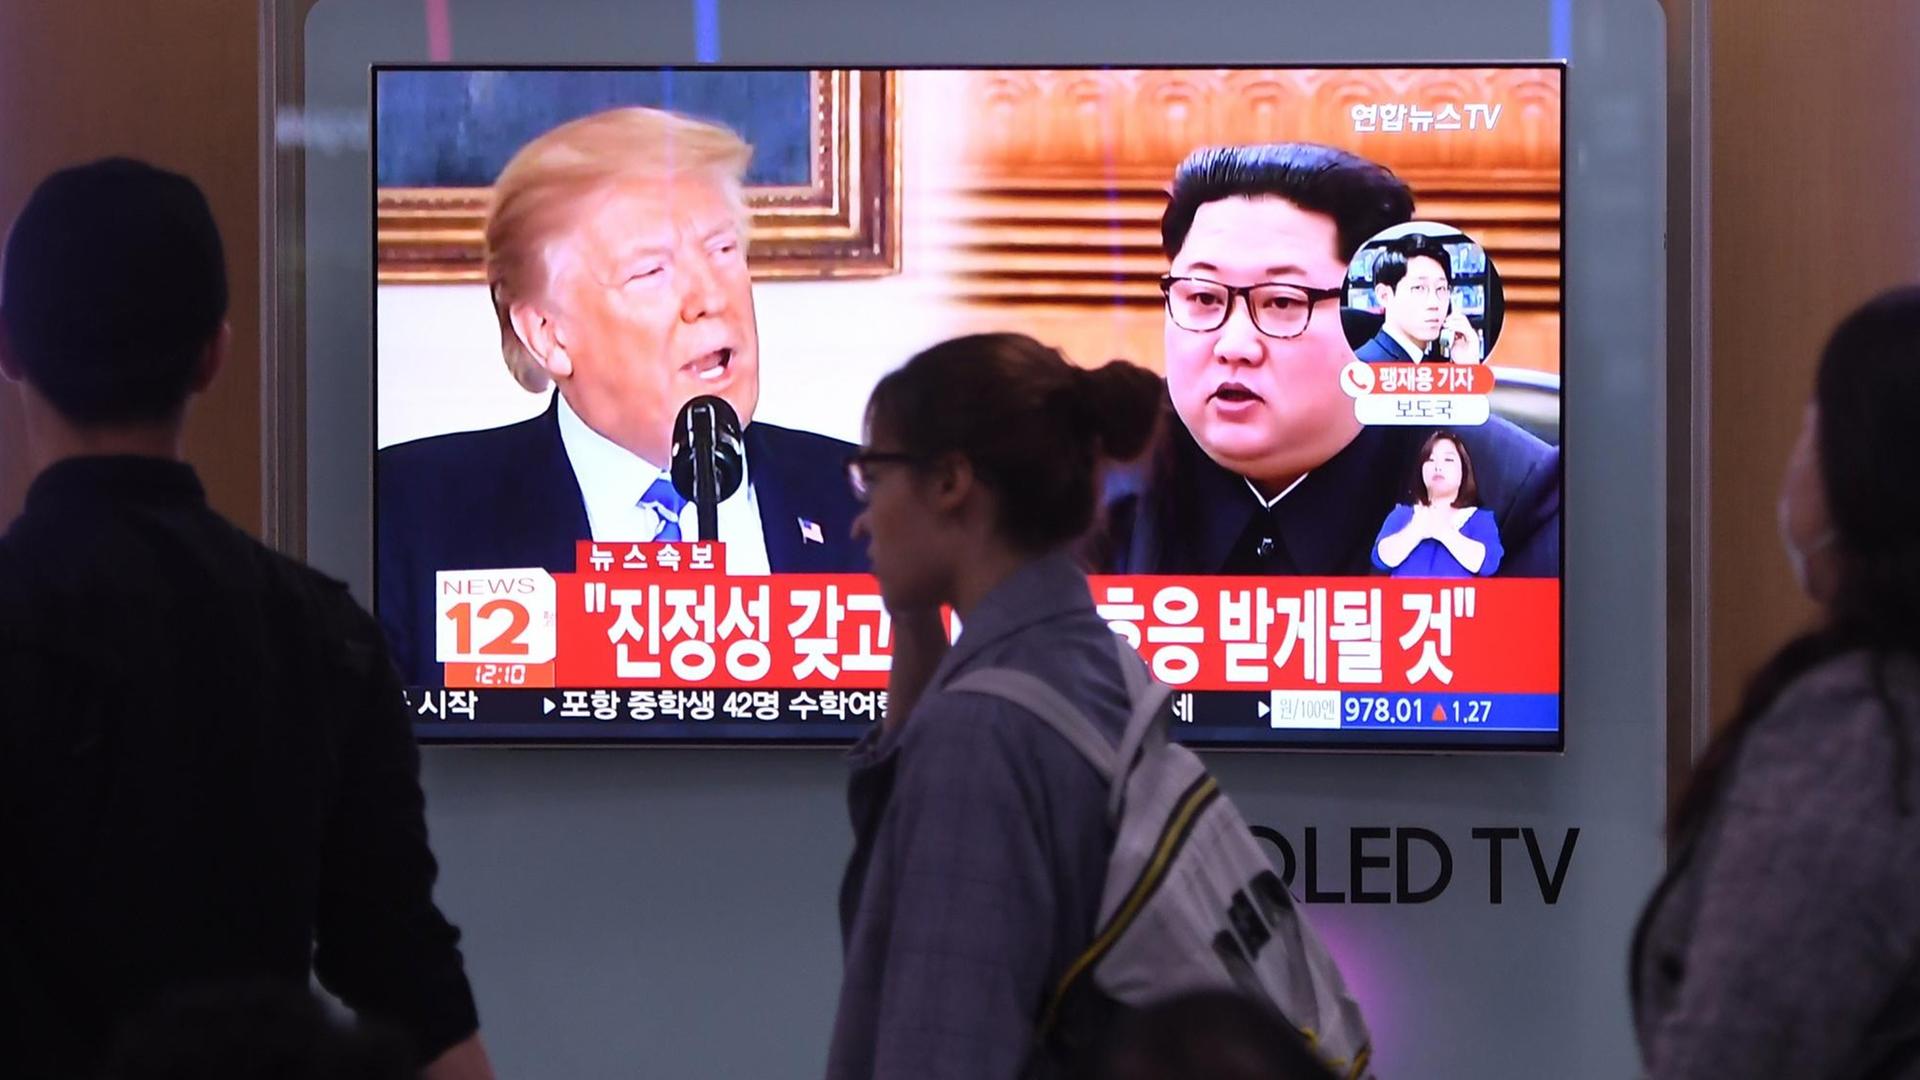 Menschen in Seoul laufen auf einem Bildschirm vorbei, auf dem US-Präsident Donald Trump und Nordkoreas Staatschef Kim Jong Un zu sehen sind.